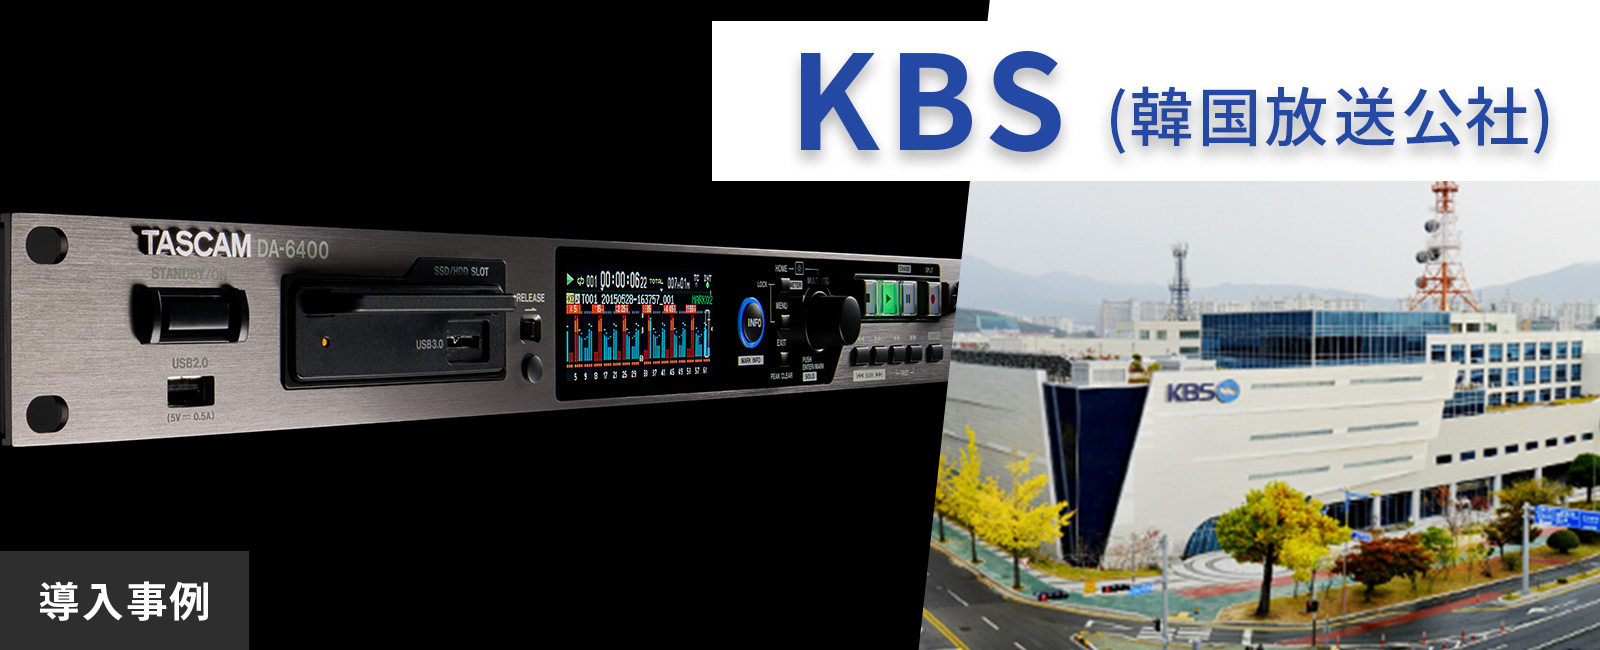 KBS(韓国放送公社) 3拠点局様がメインレコーダーとしてDA-6400を導入